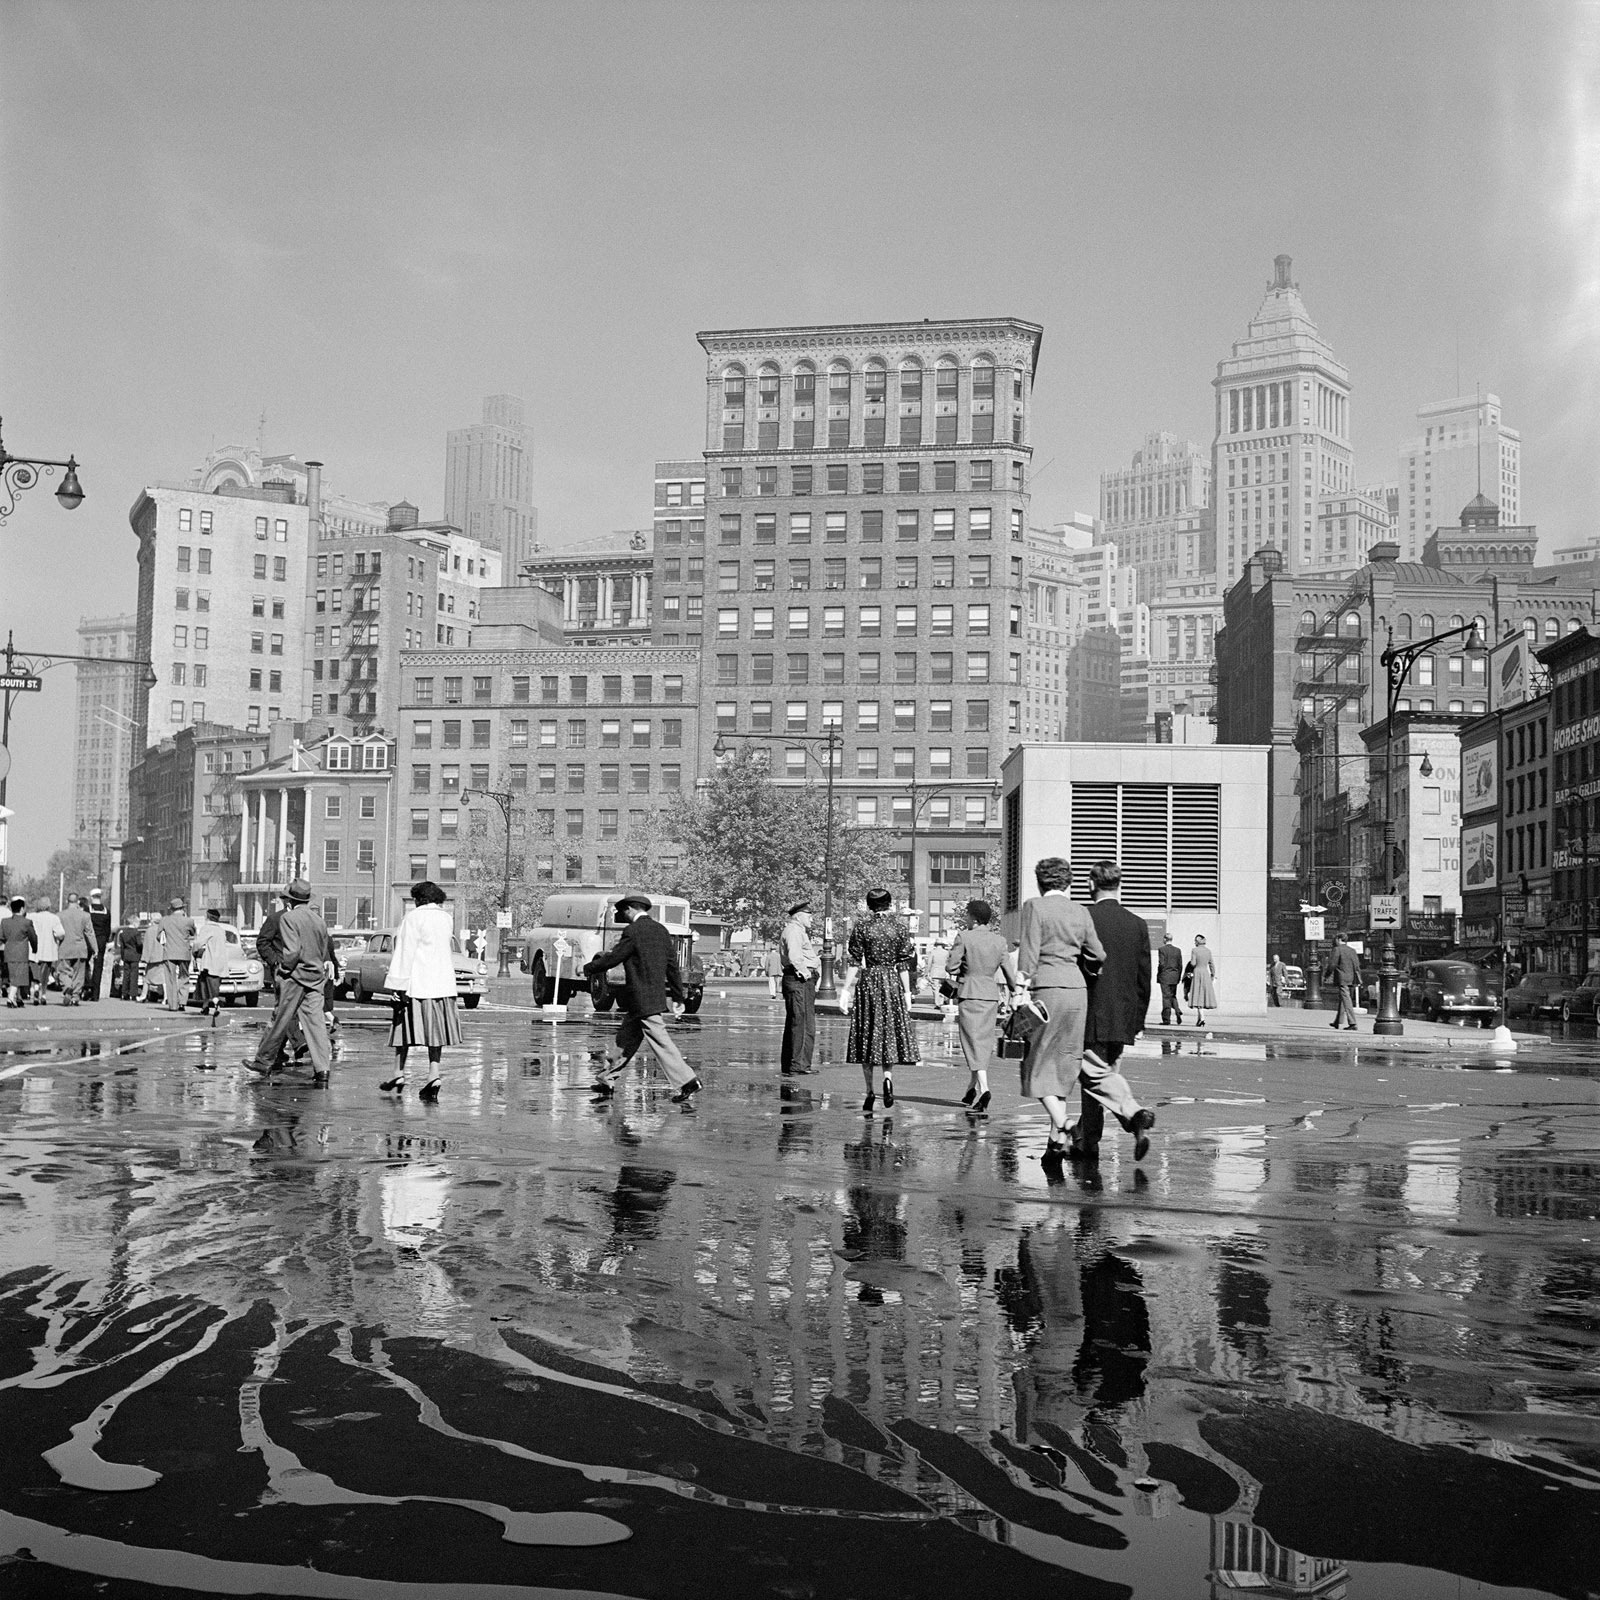 New York, NY, Sept. 26, 1954